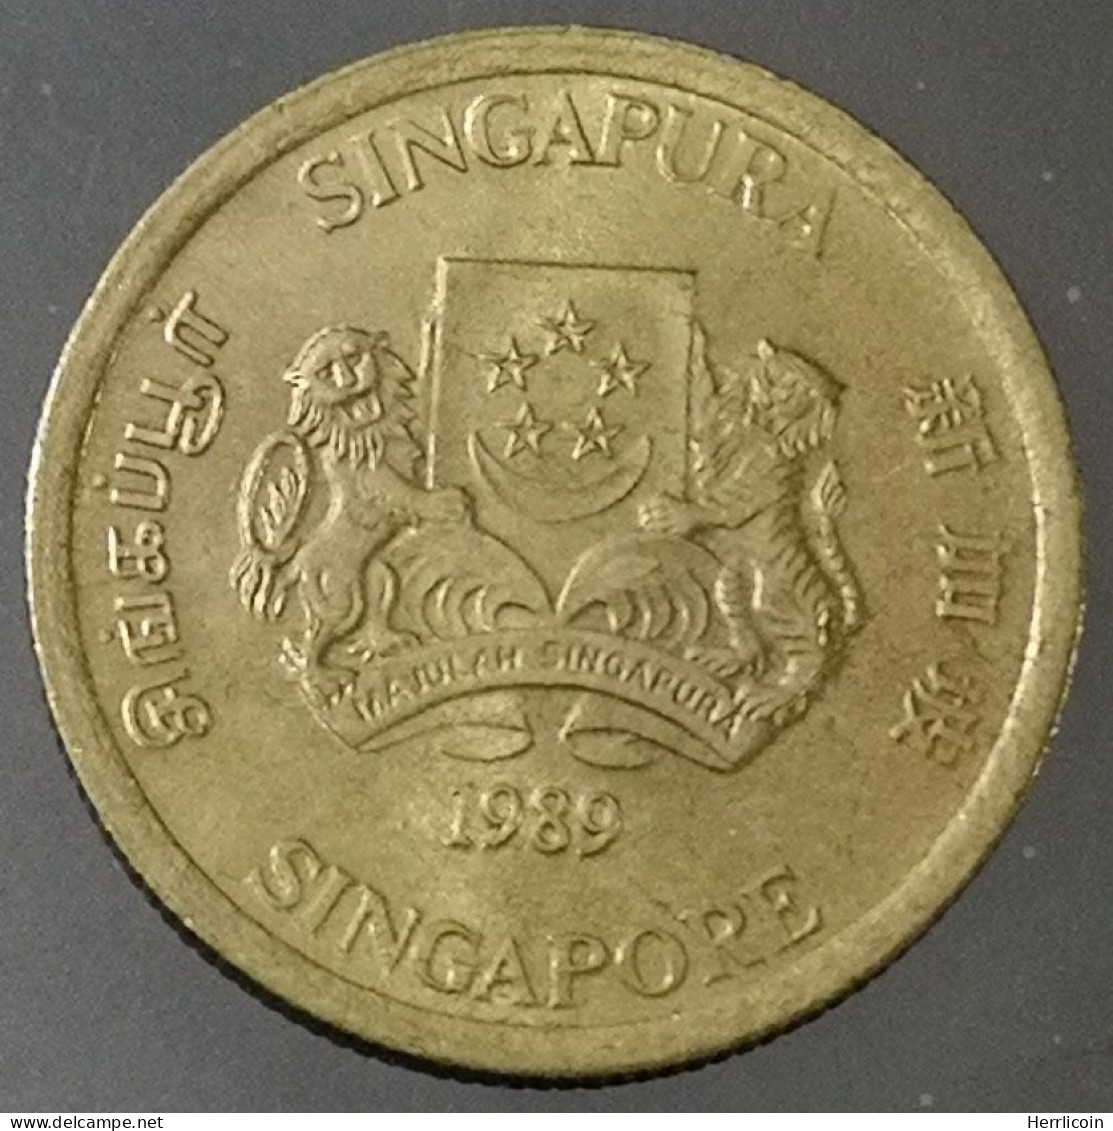 Monnaie Singapour - 1989 - 5 Cents Blason Haut - Singapour